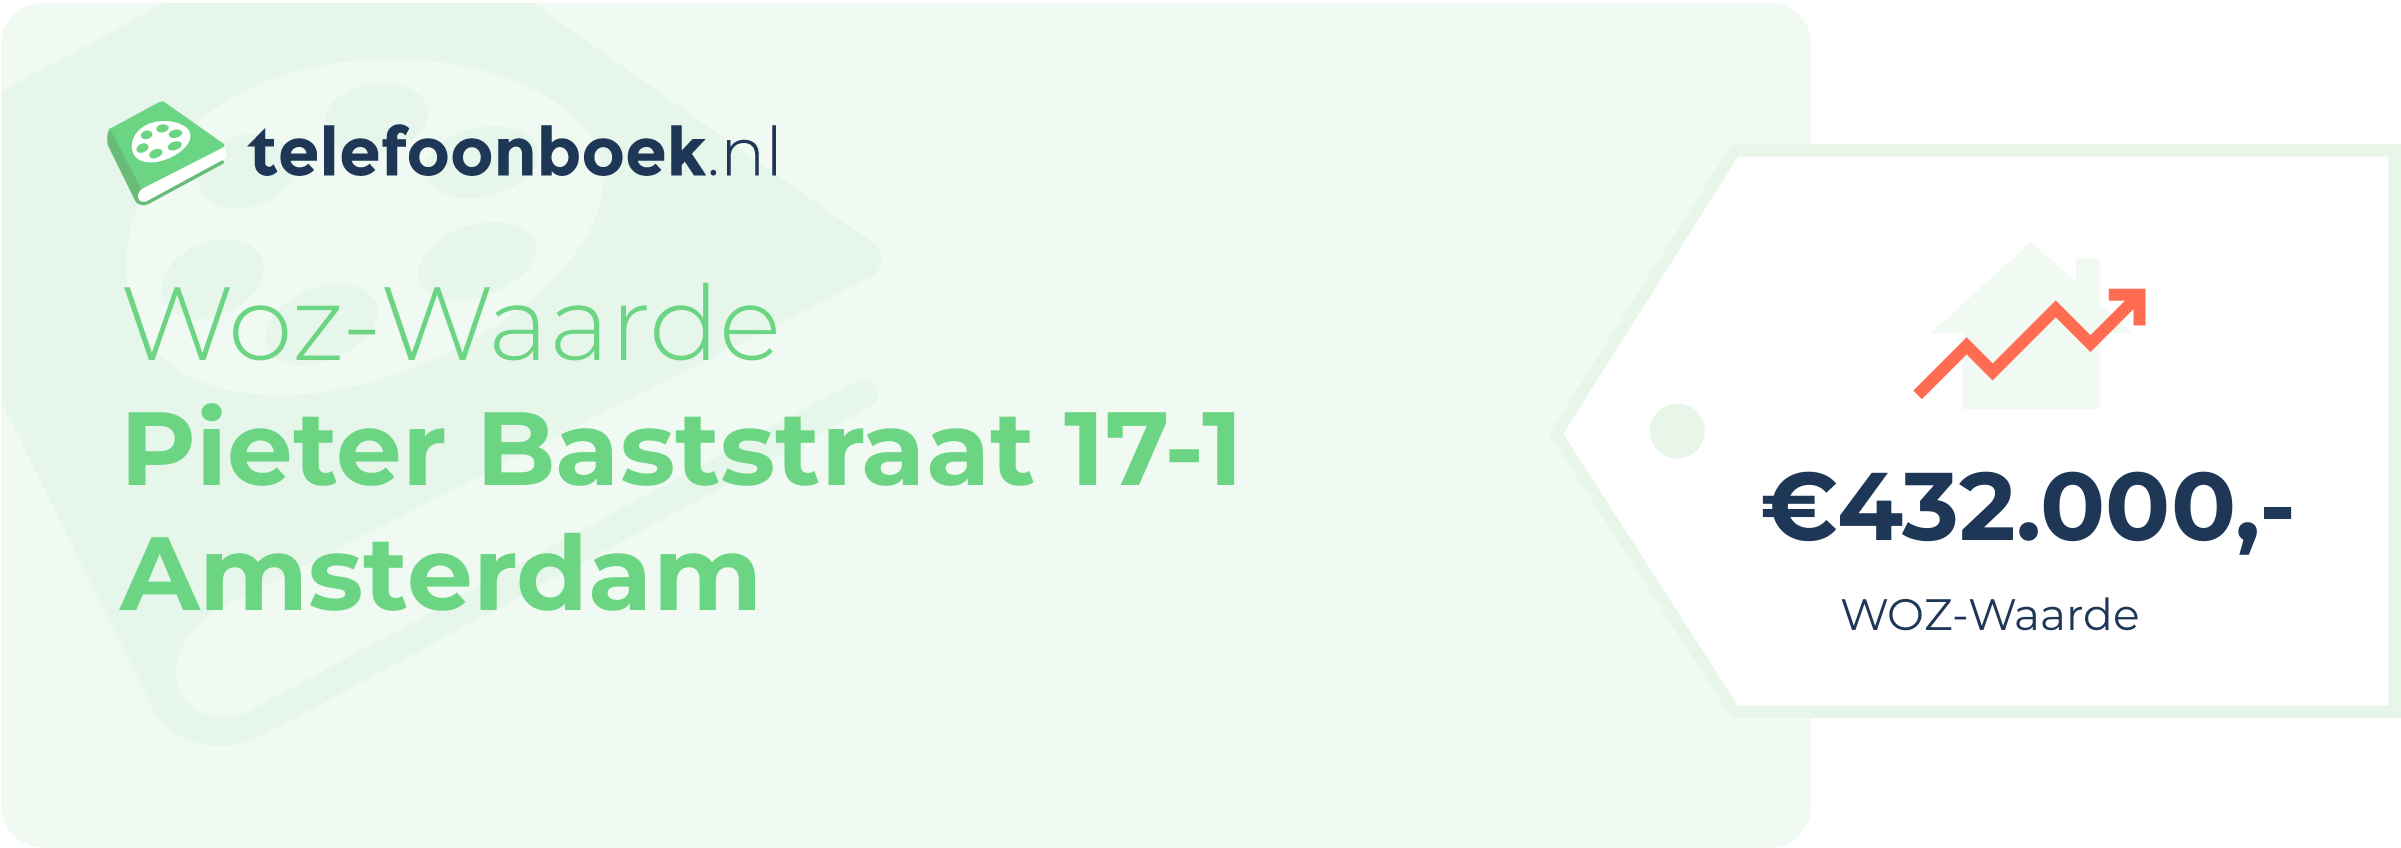 WOZ-waarde Pieter Baststraat 17-1 Amsterdam